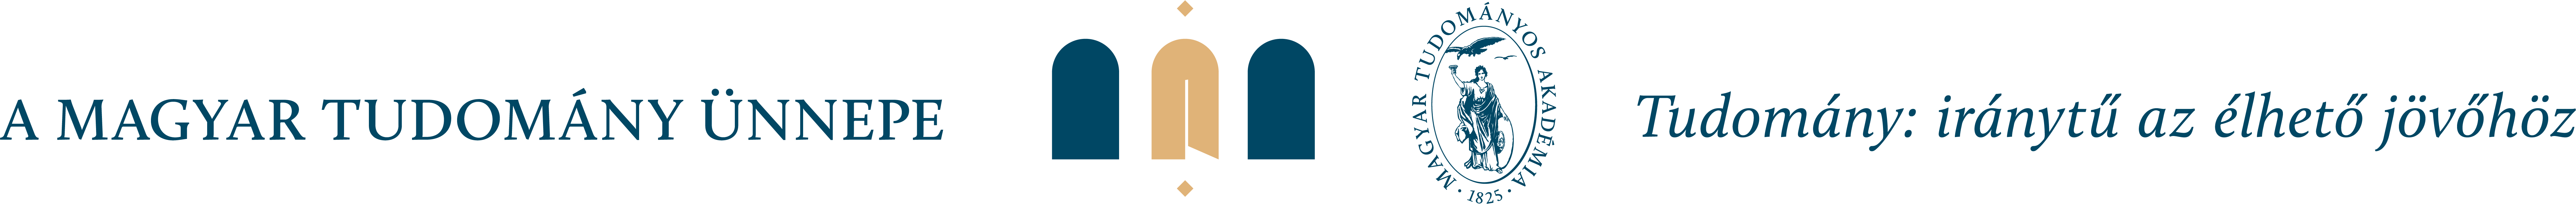 MTU_logo_motto_2021_vektor-02